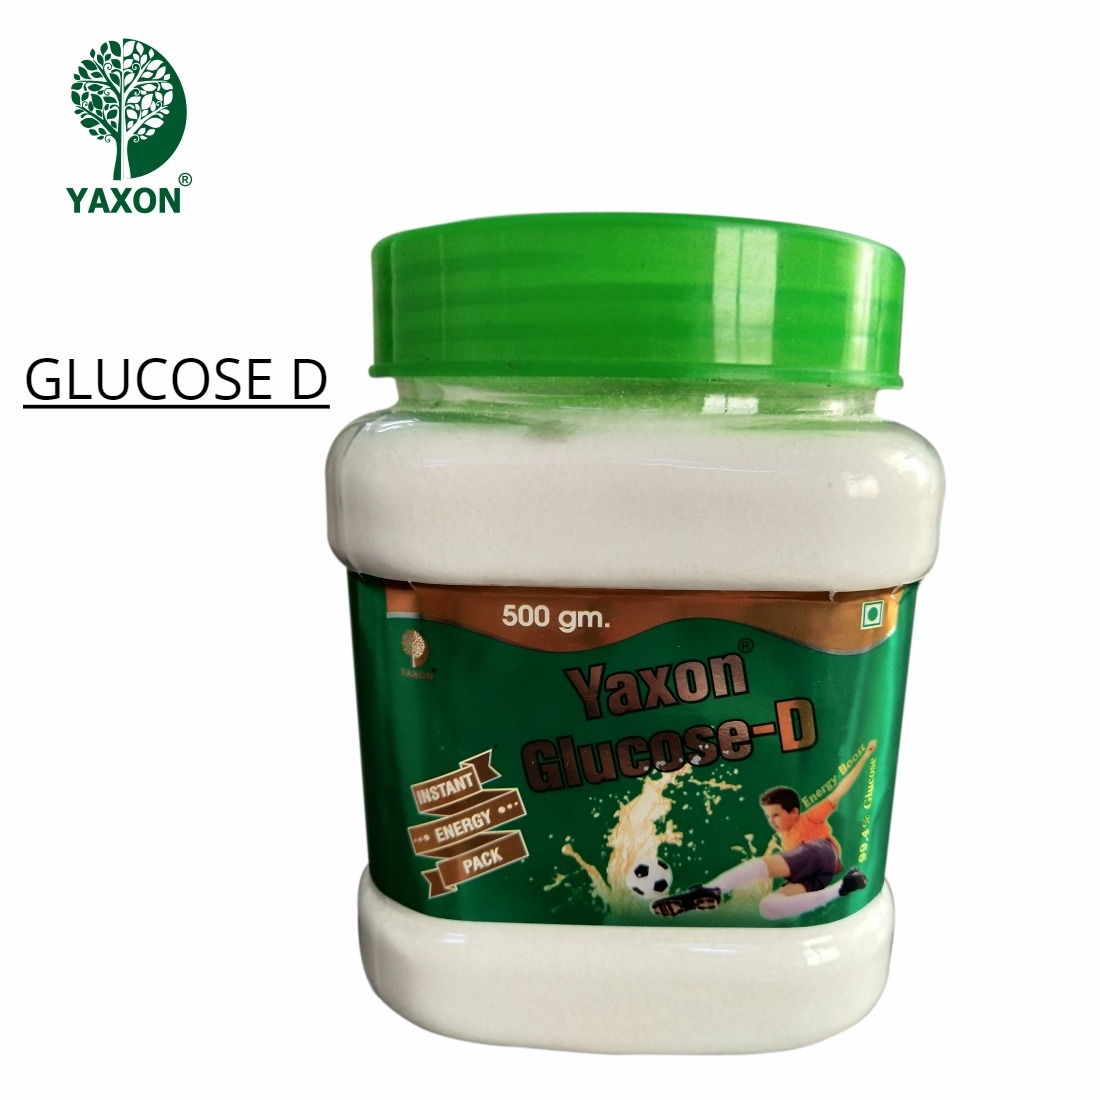 YAXON Glucose D 500gm Jar